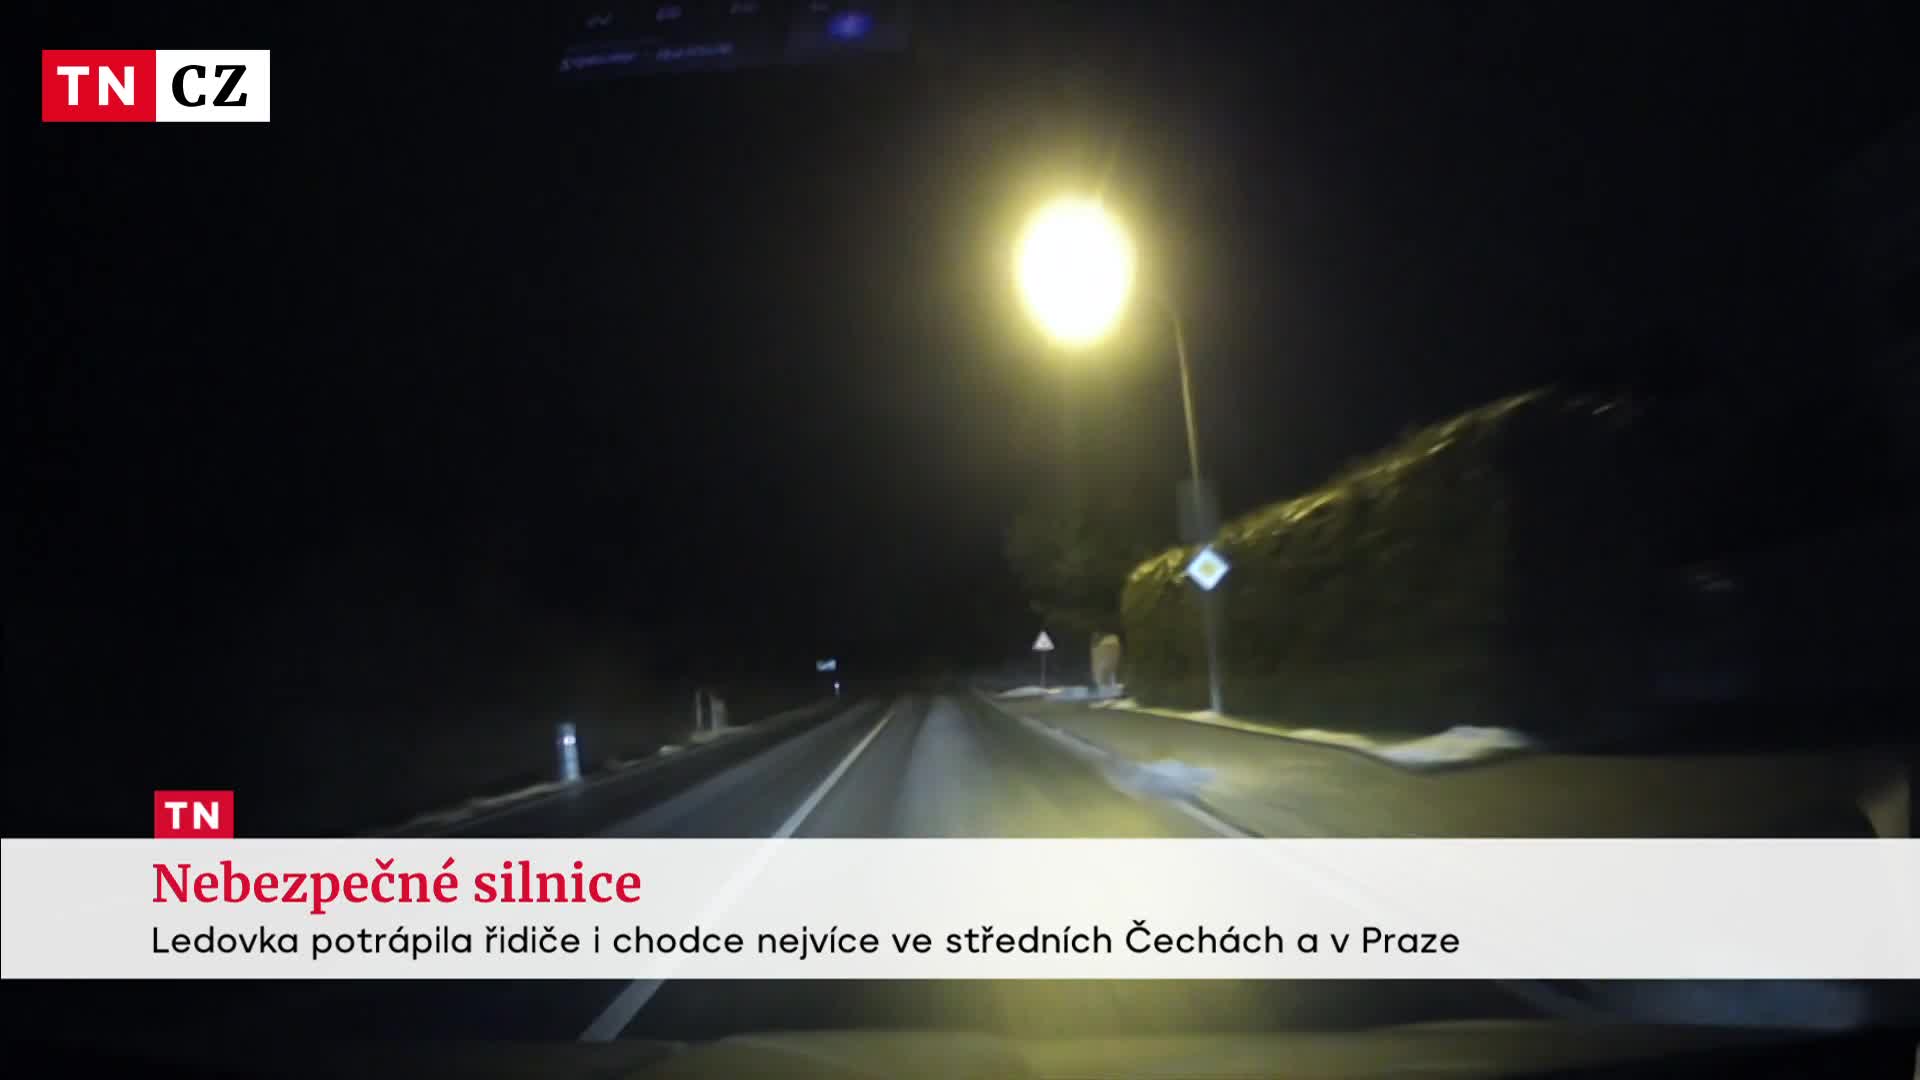 Česko potrápila ledovka. Kvůli špatnému počasí bouralo několik aut